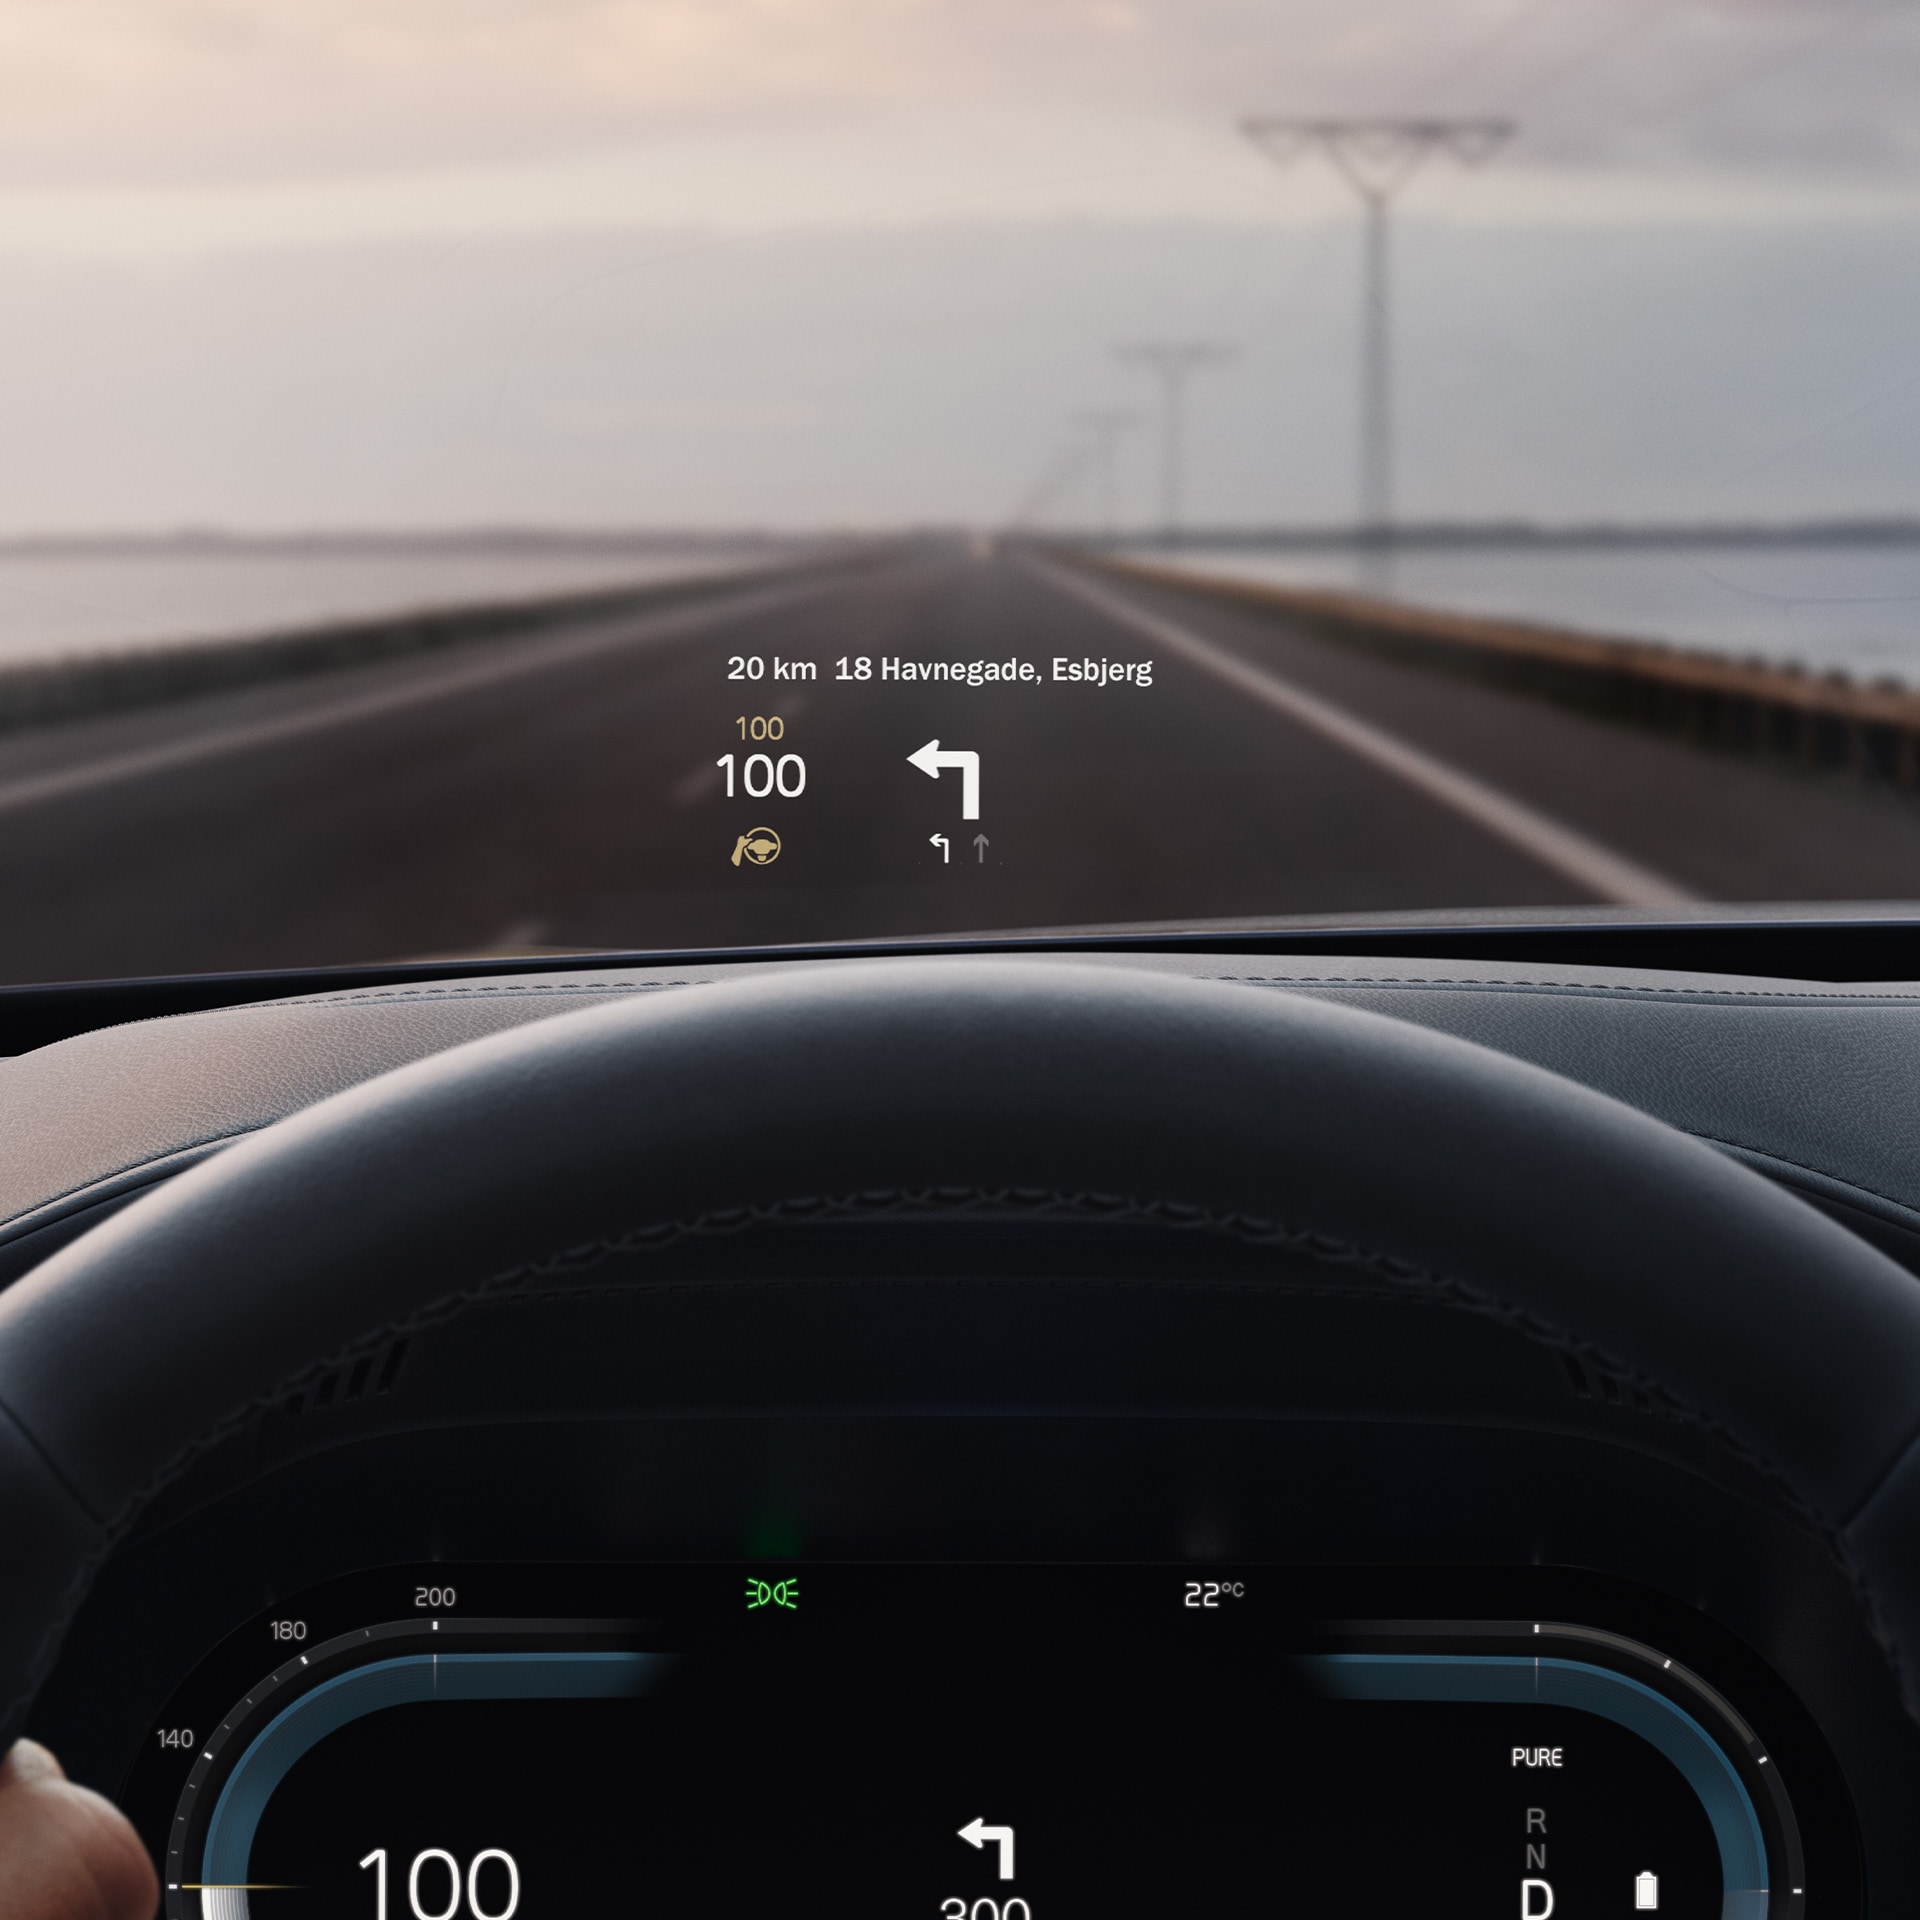 Μέσα σε ένα Volvo, το head-up display εμφανίζει πάνω στο παρμπρίζ ενδείξεις για την ταχύτητα και την πλοήγηση.